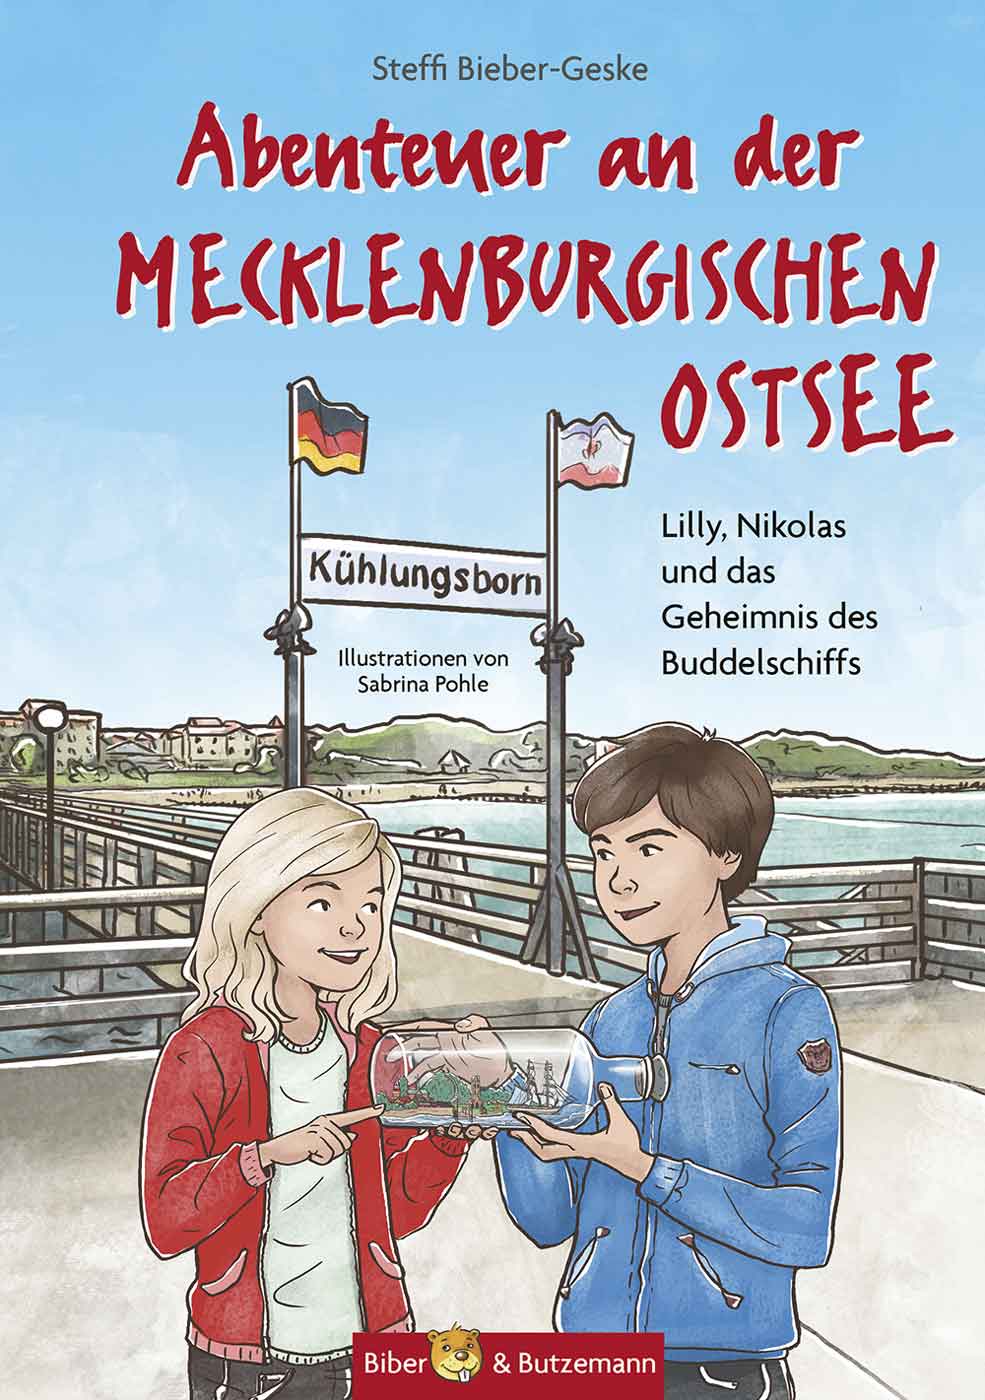 Kinderbuch Mecklenburgische Ostsee Kühlungsborn Buddelschiff